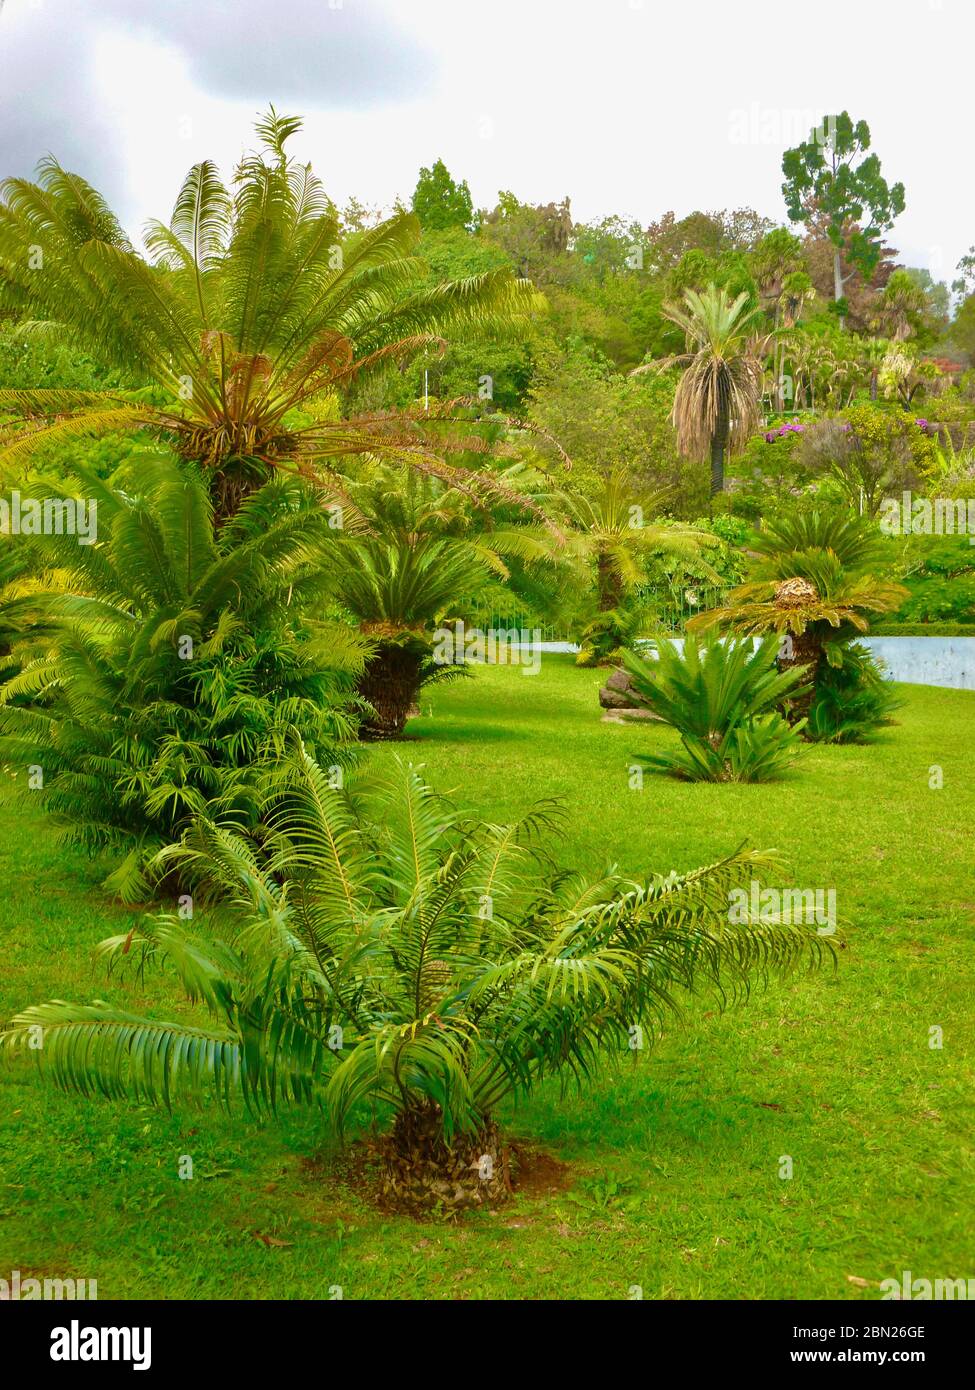 Jardin paysager avec différents types de palmiers sur pelouse Banque D'Images